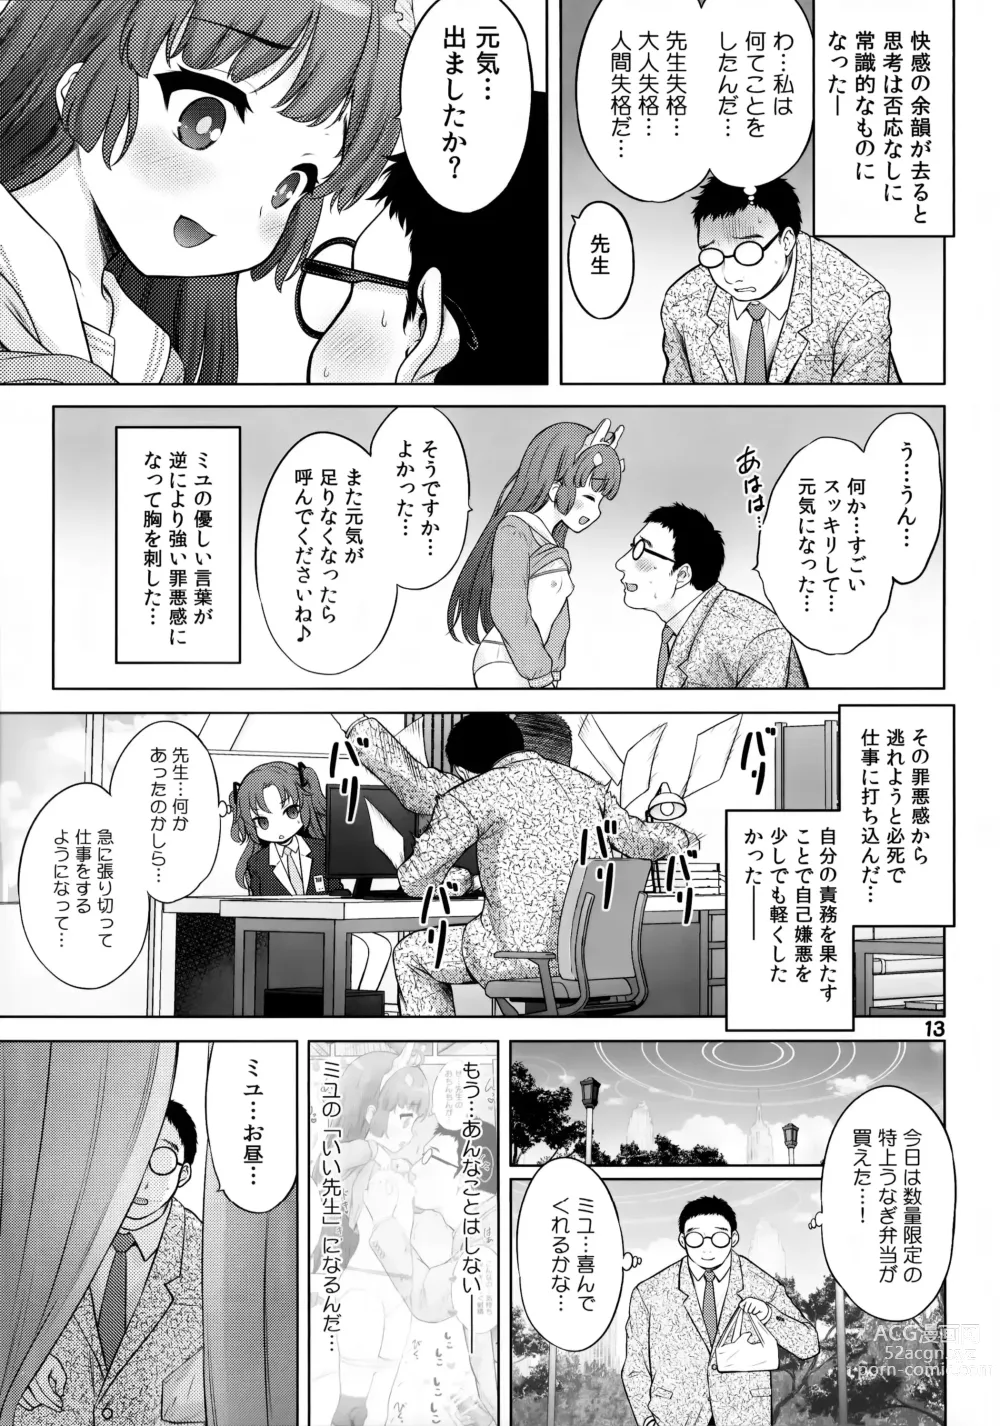 Page 12 of doujinshi Kyouizon no Usagi - Codependency Rabbit